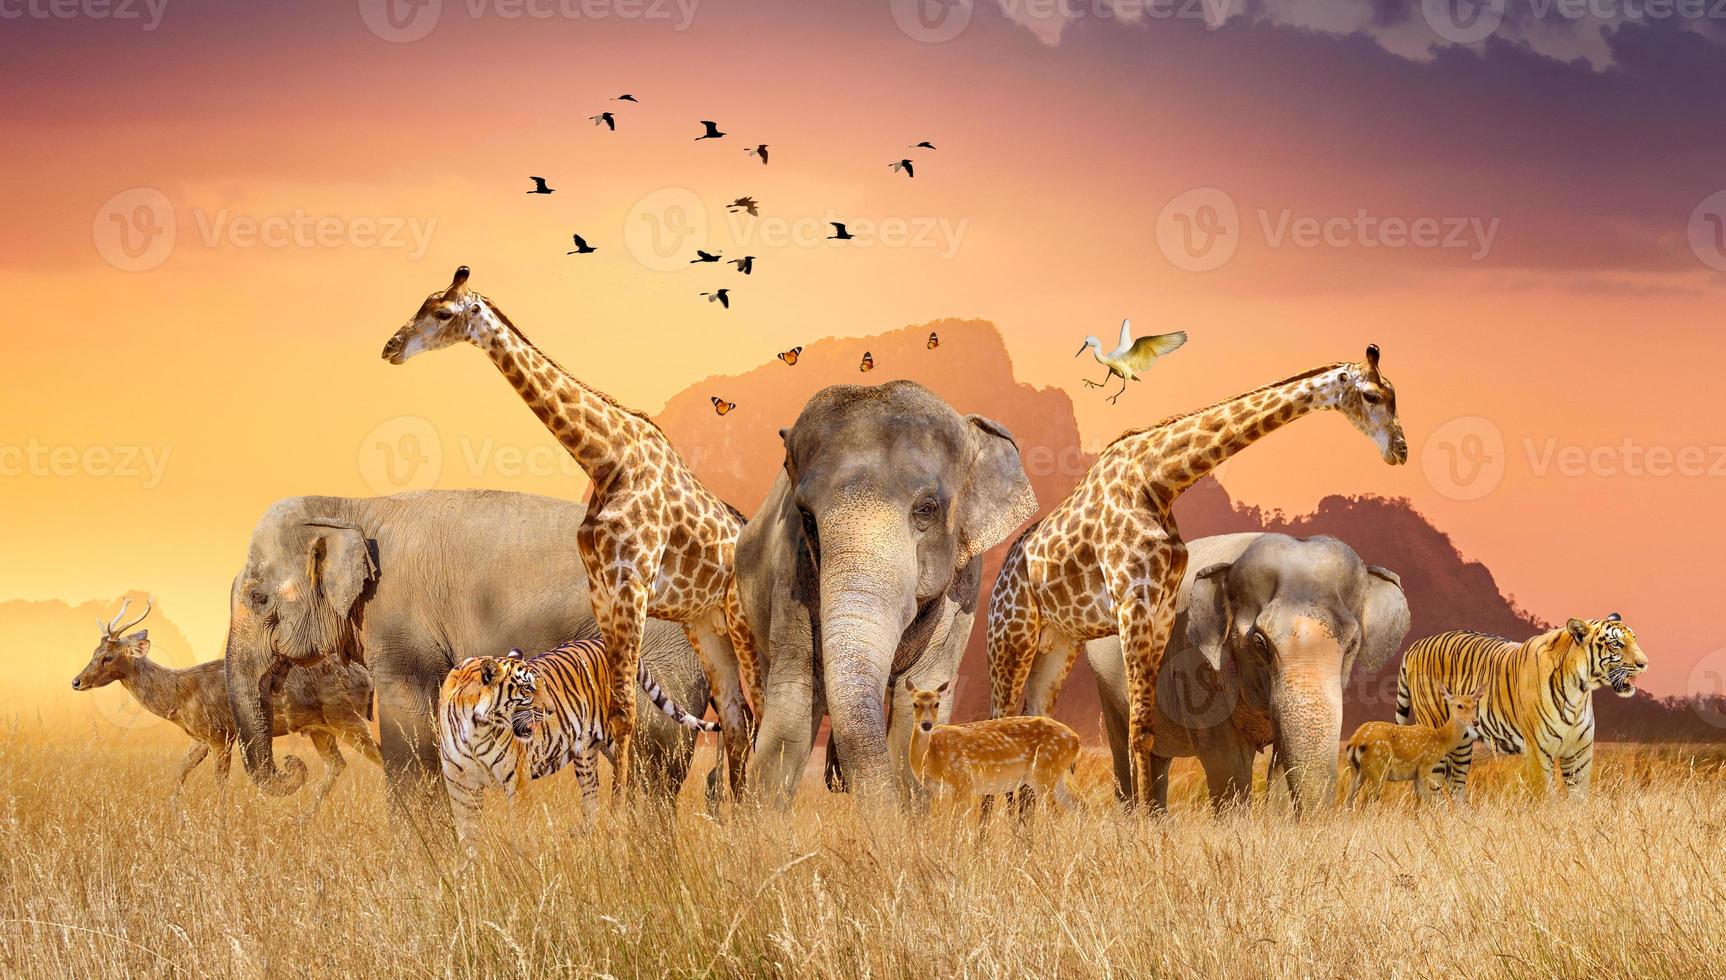 world wildlife day groepen wilde beesten verzamelden zich 's avonds in grote kuddes in het open veld als de gouden zon scheen. foto